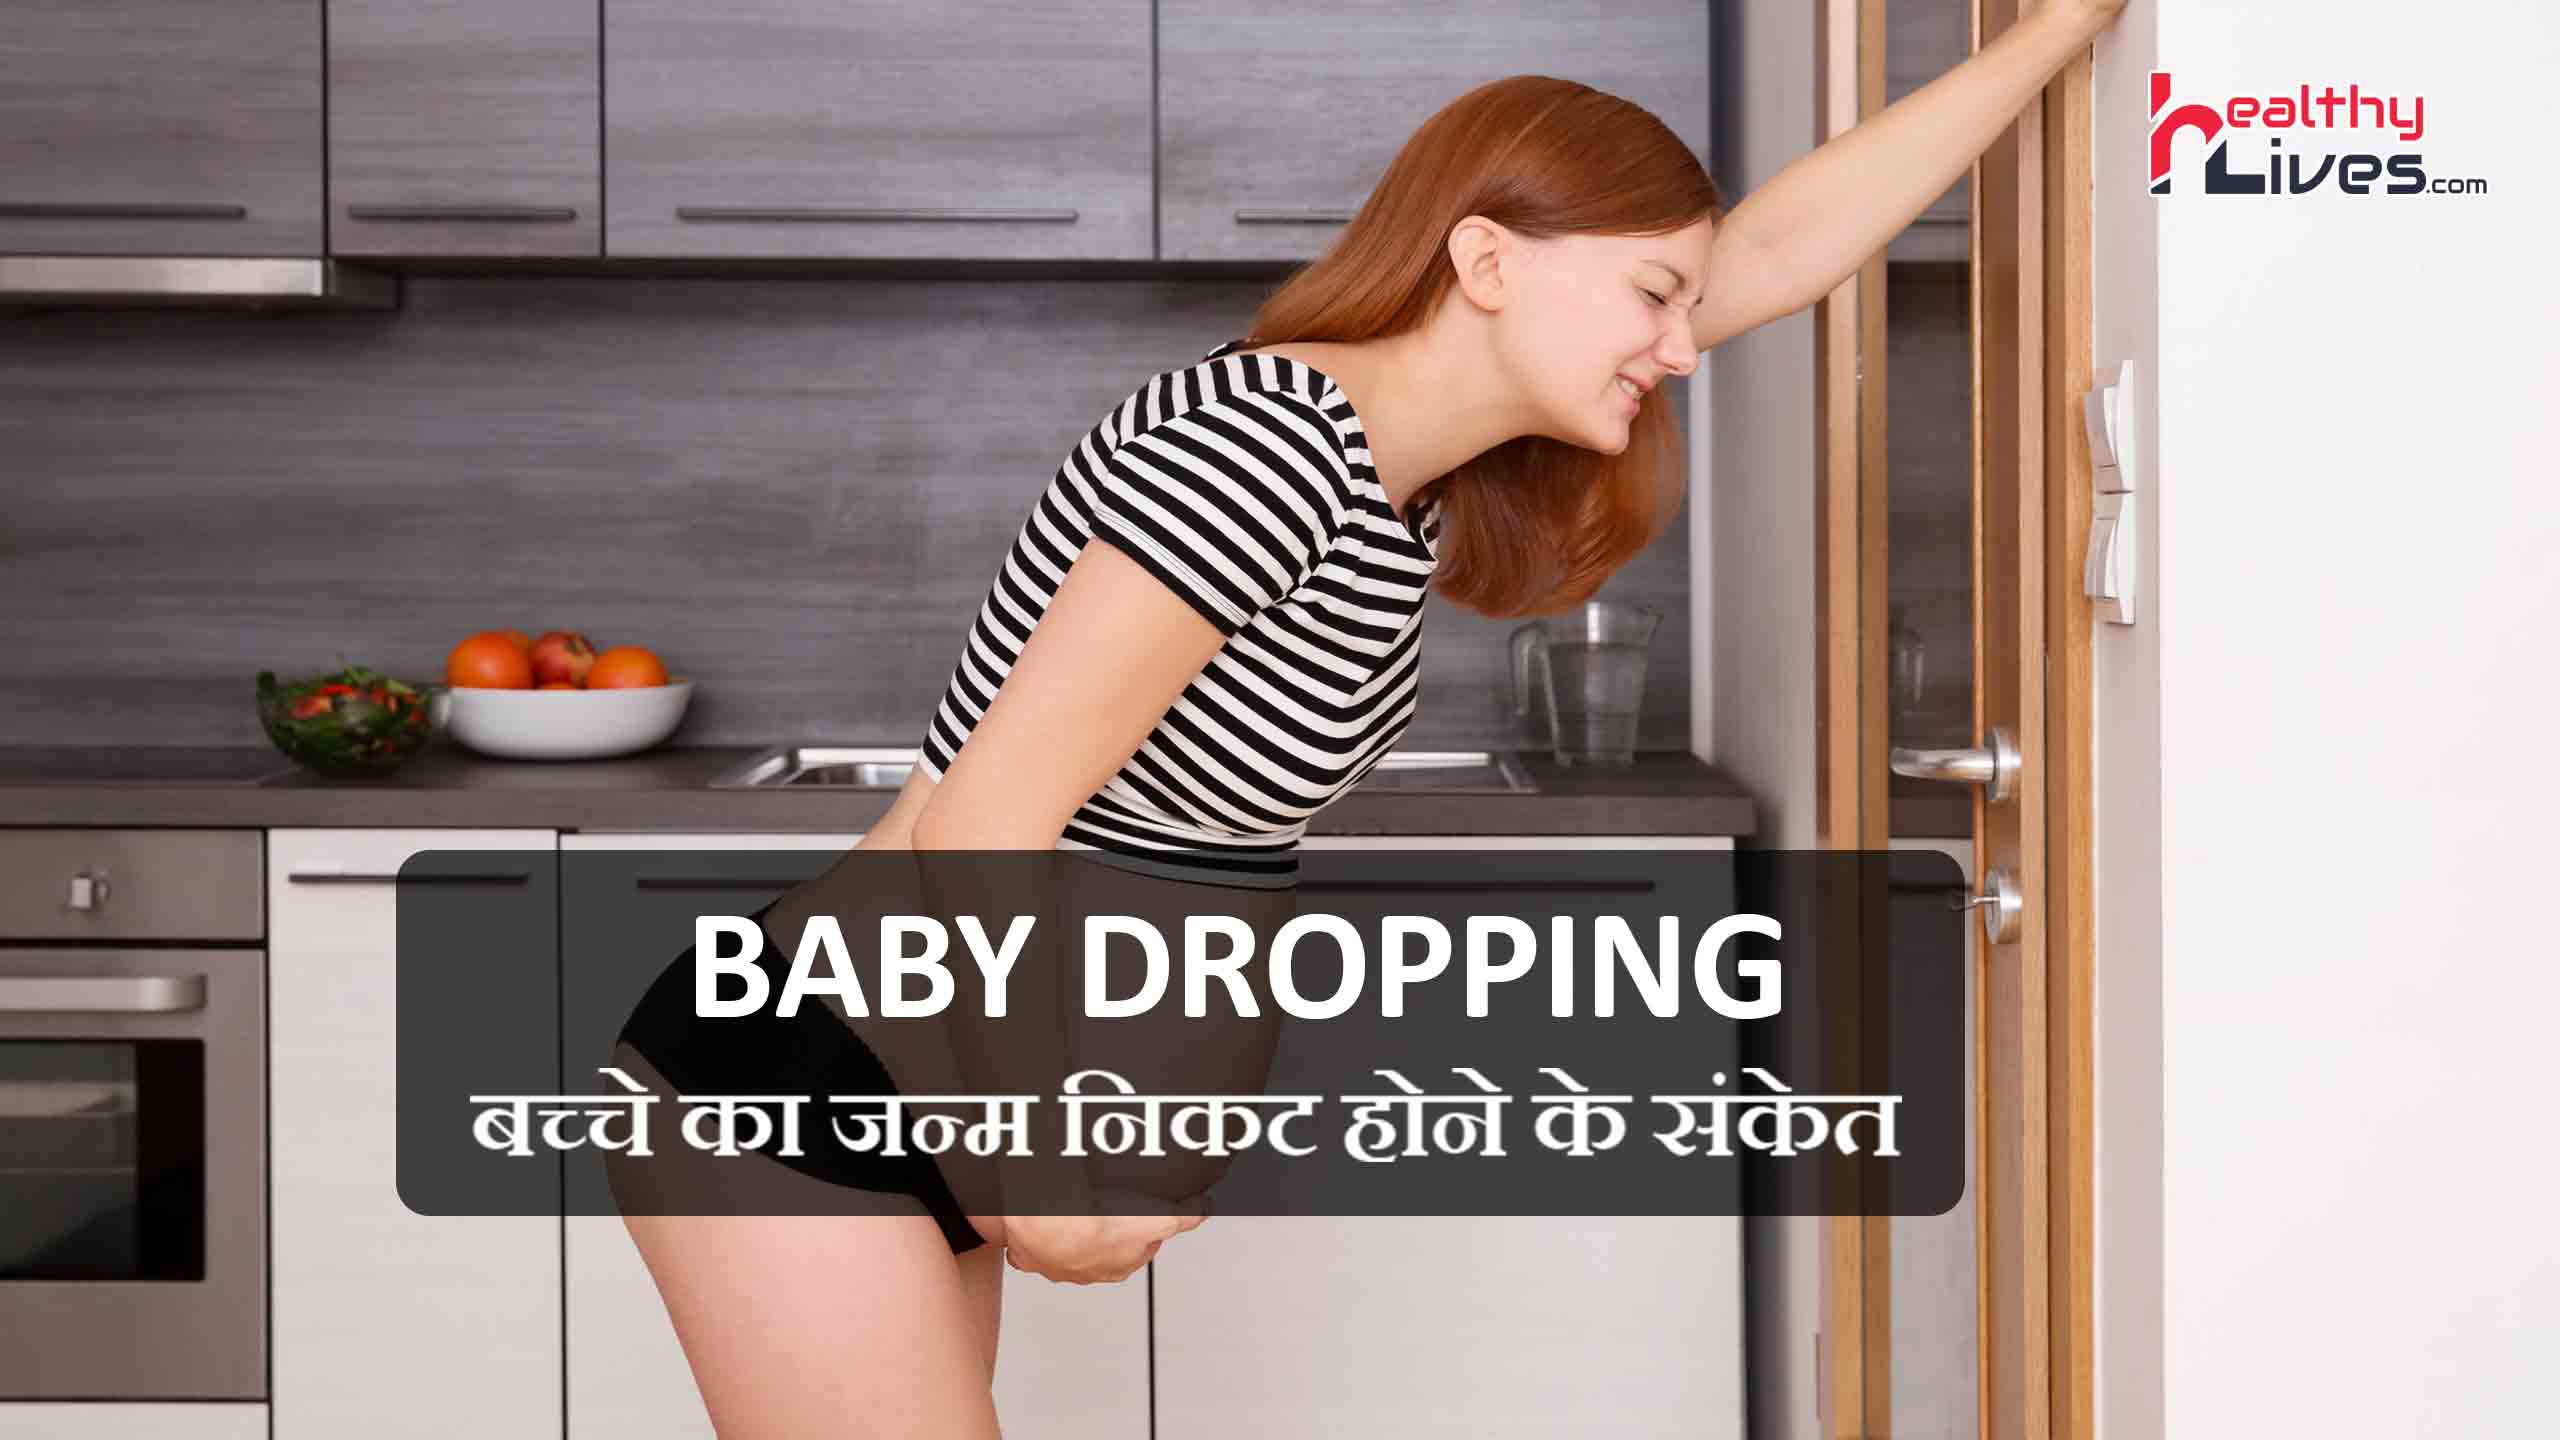 Baby Dropping: गर्भावस्था का अंतिम चरण, जानिए इसकी जानकारी